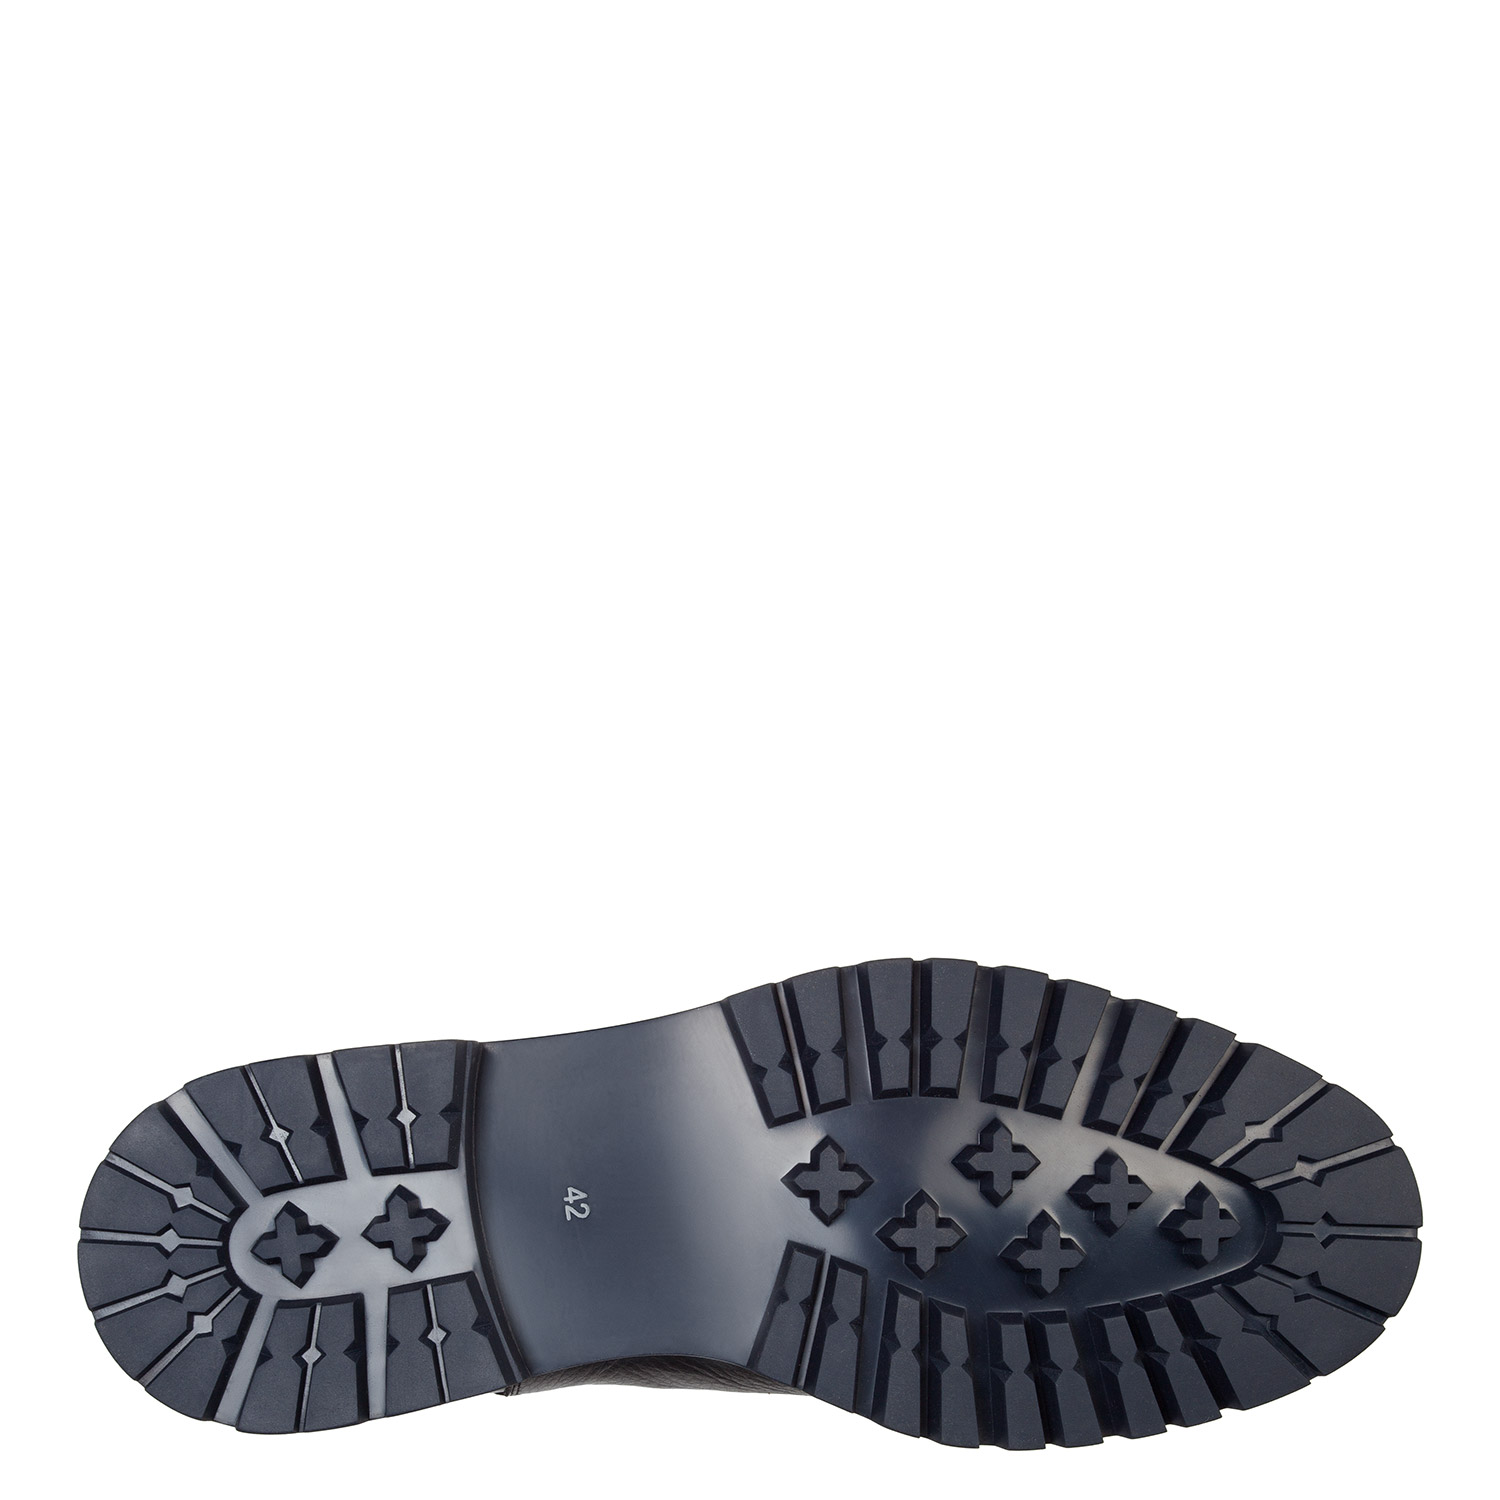 Зимние ботинки-челси из натуральной кожи PAZOLINI GD-X9512-1